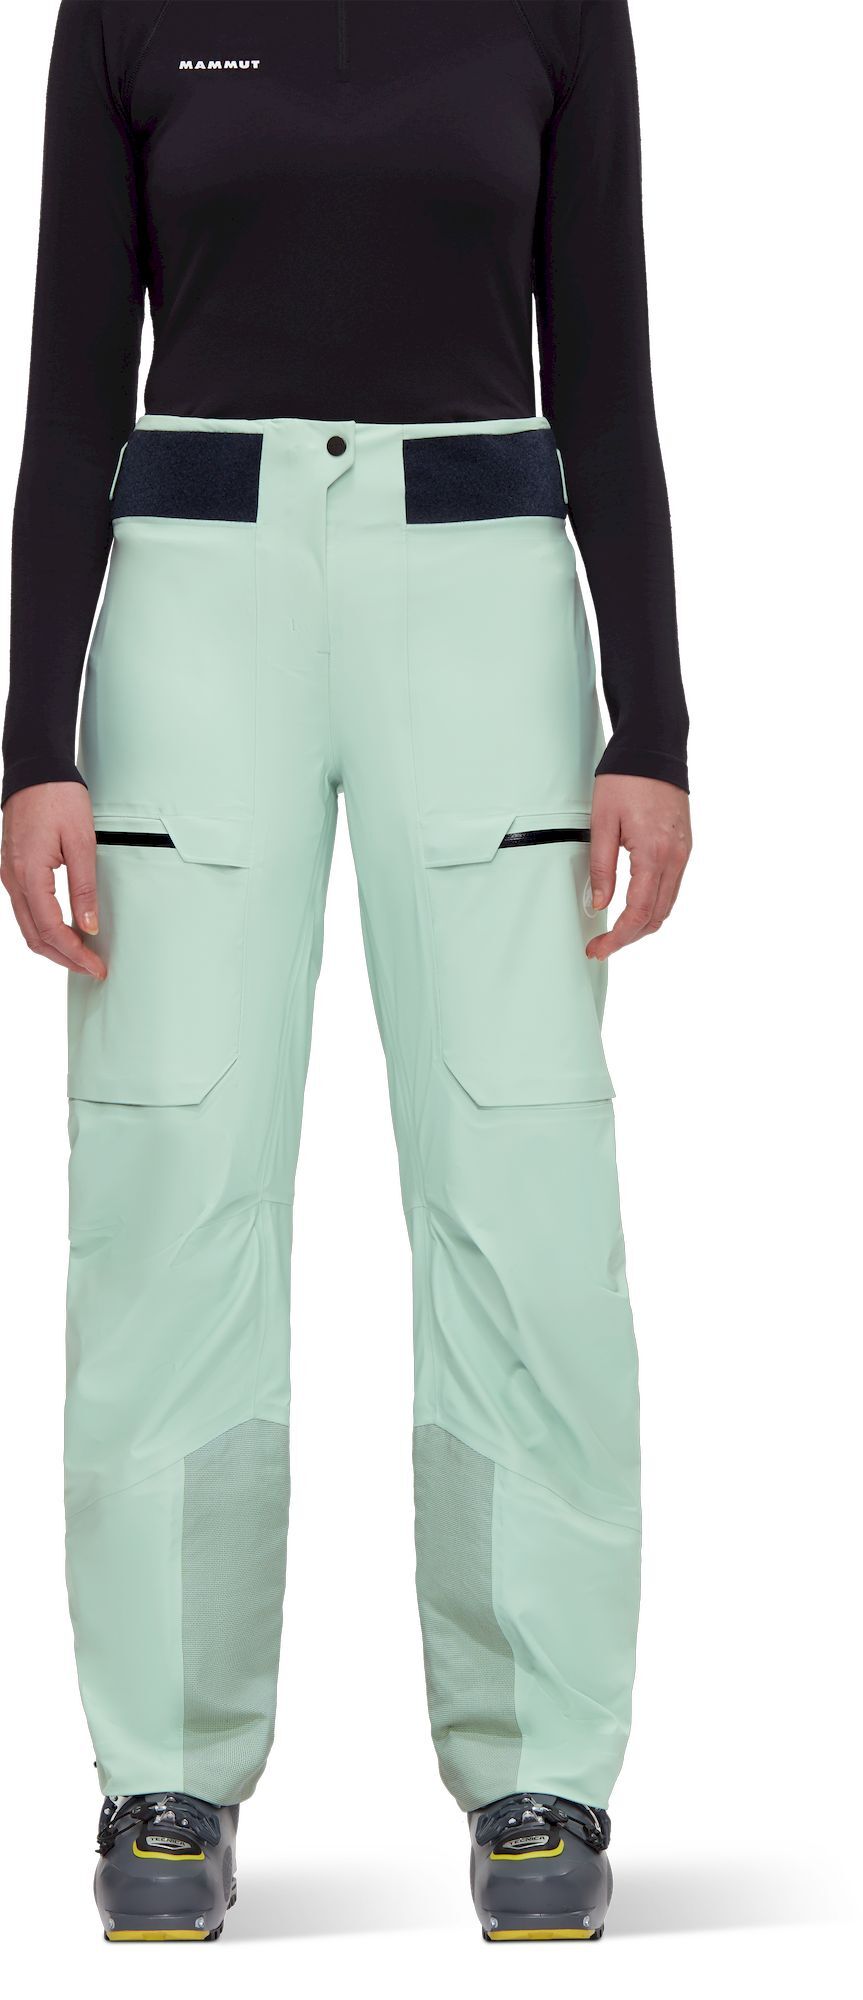 Mammut Haldigrat Air HS Pants - Spodnie do skitouringu damskie | Hardloop